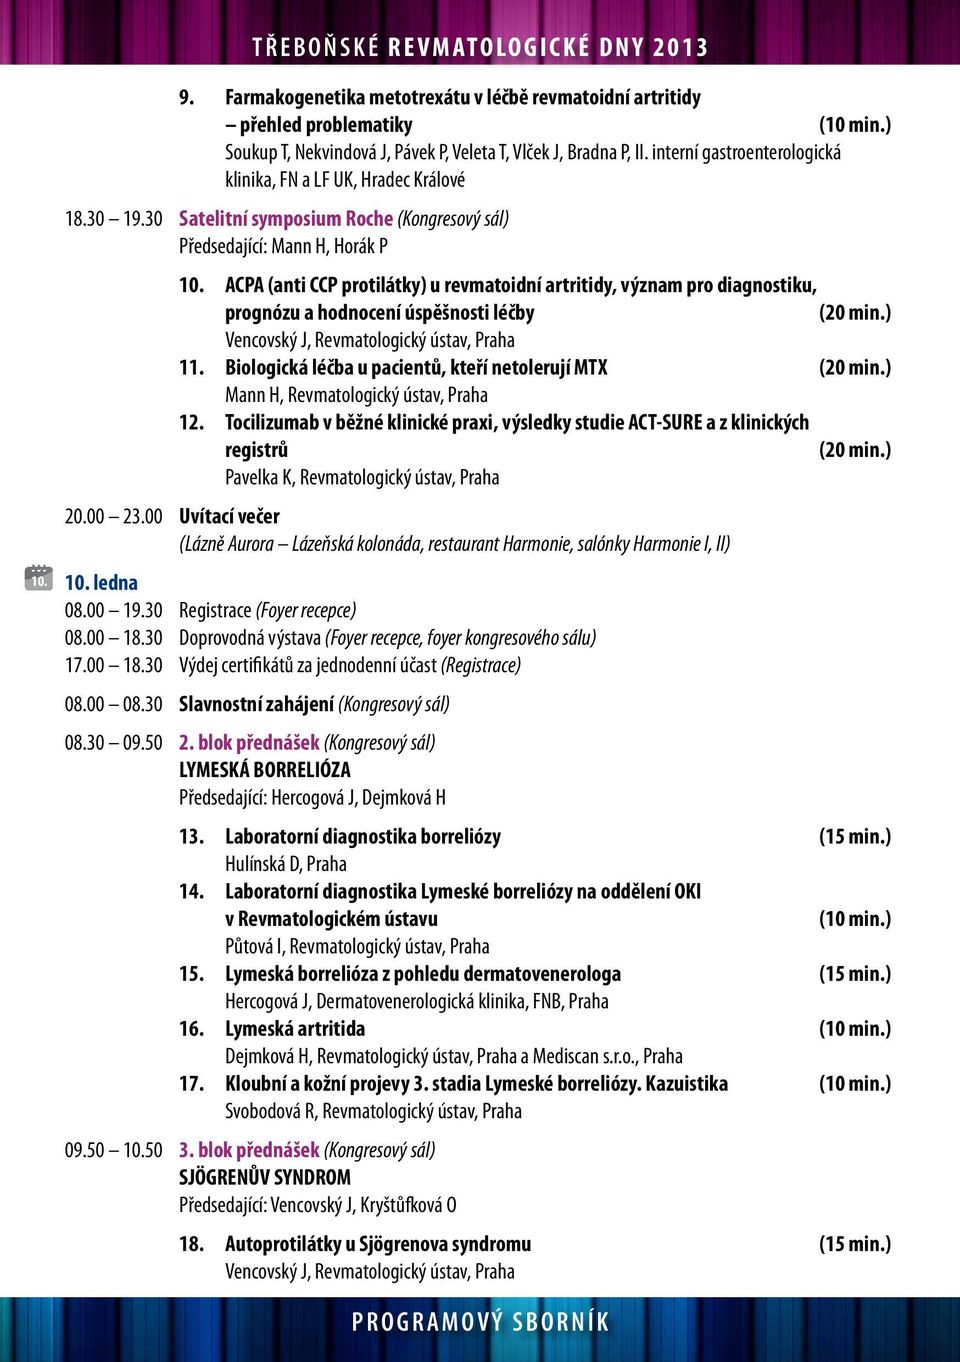 ACPA (anti CCP protilátky) u revmatoidní artritidy, význam pro diagnostiku, prognózu a hodnocení úspěšnosti léčby (20 min.) Vencovský J, Revmatologický ústav, Praha 11.